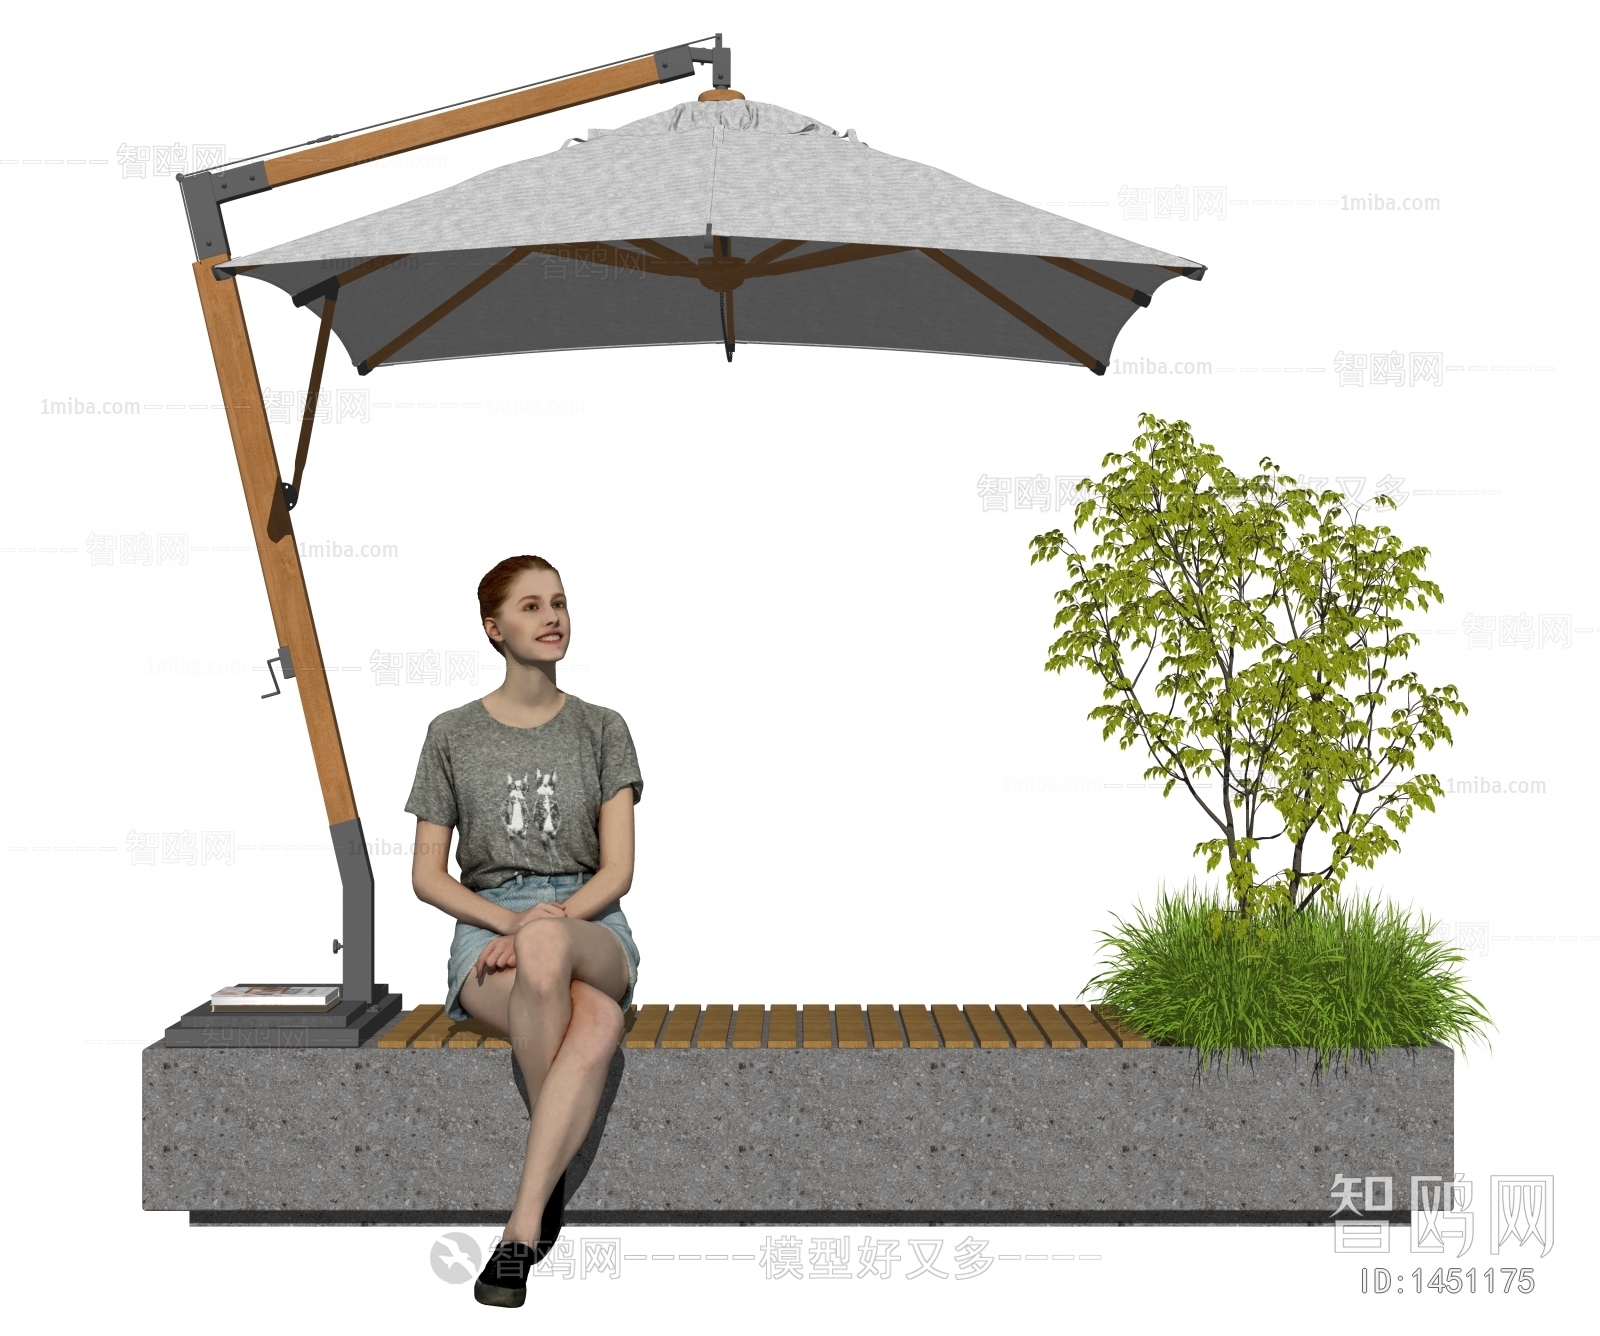 Modern Outdoor Chair